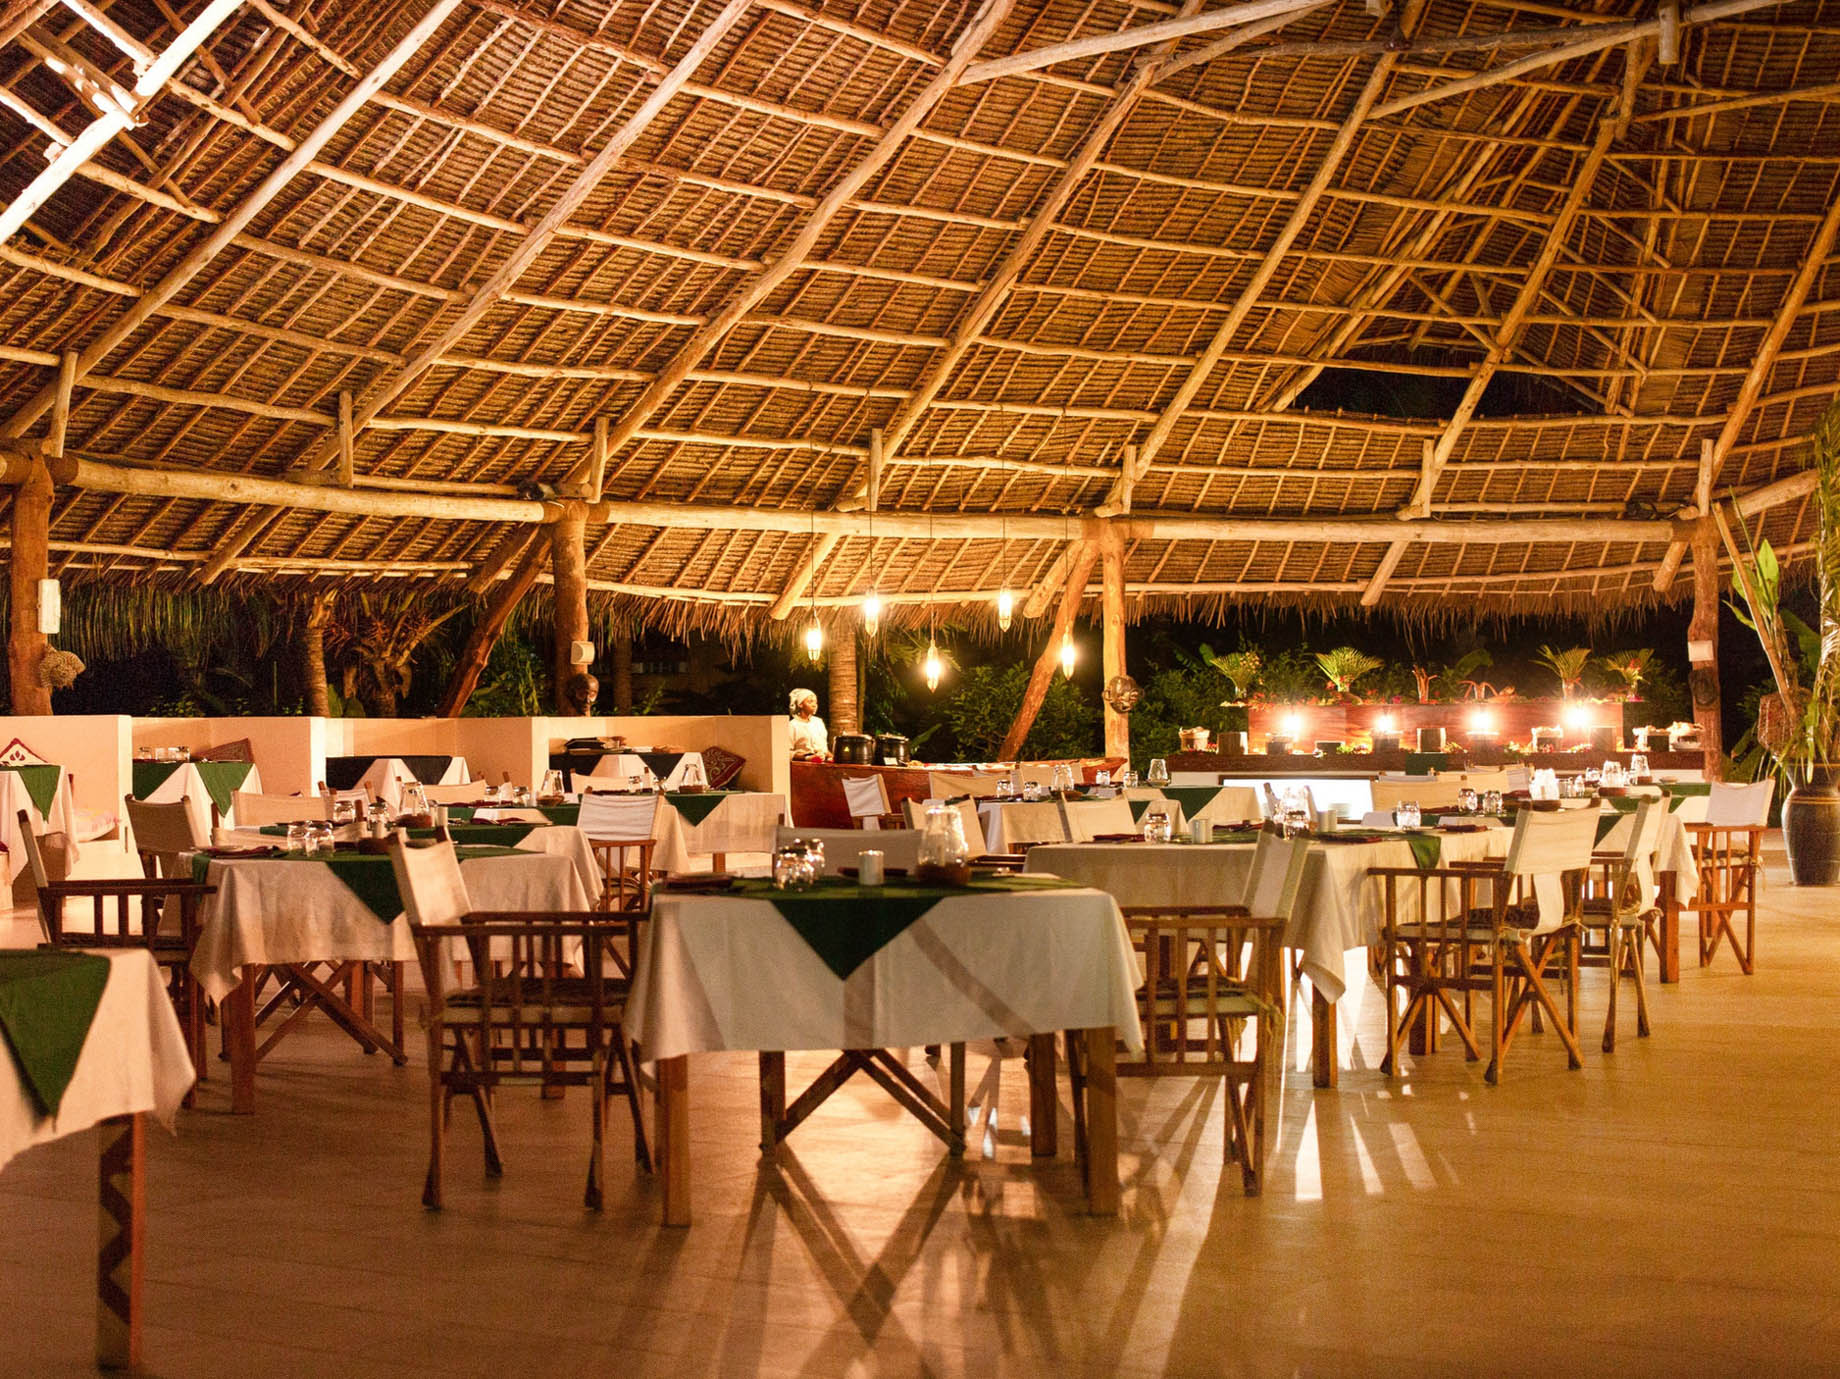 Gold Zanzibar Beach House & Spa Resort – Nungwi, Zanzibar, Tanzania – Kilimanjaro Restaurant Evening Dining